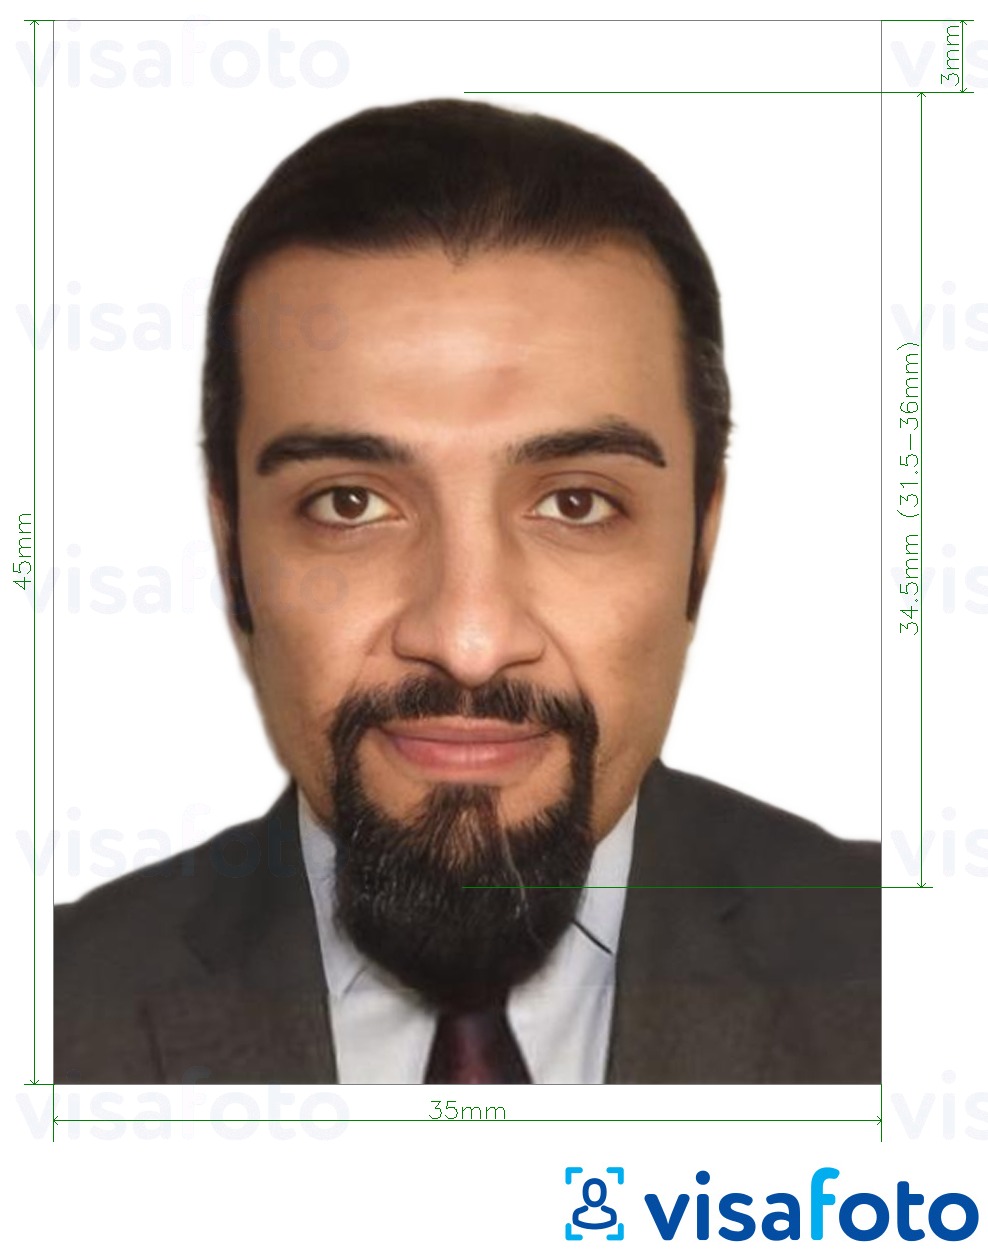 Primjer fotografije za Iračka putovnica 35x45 mm (3,5x4,5 cm) s točno određenom veličinom